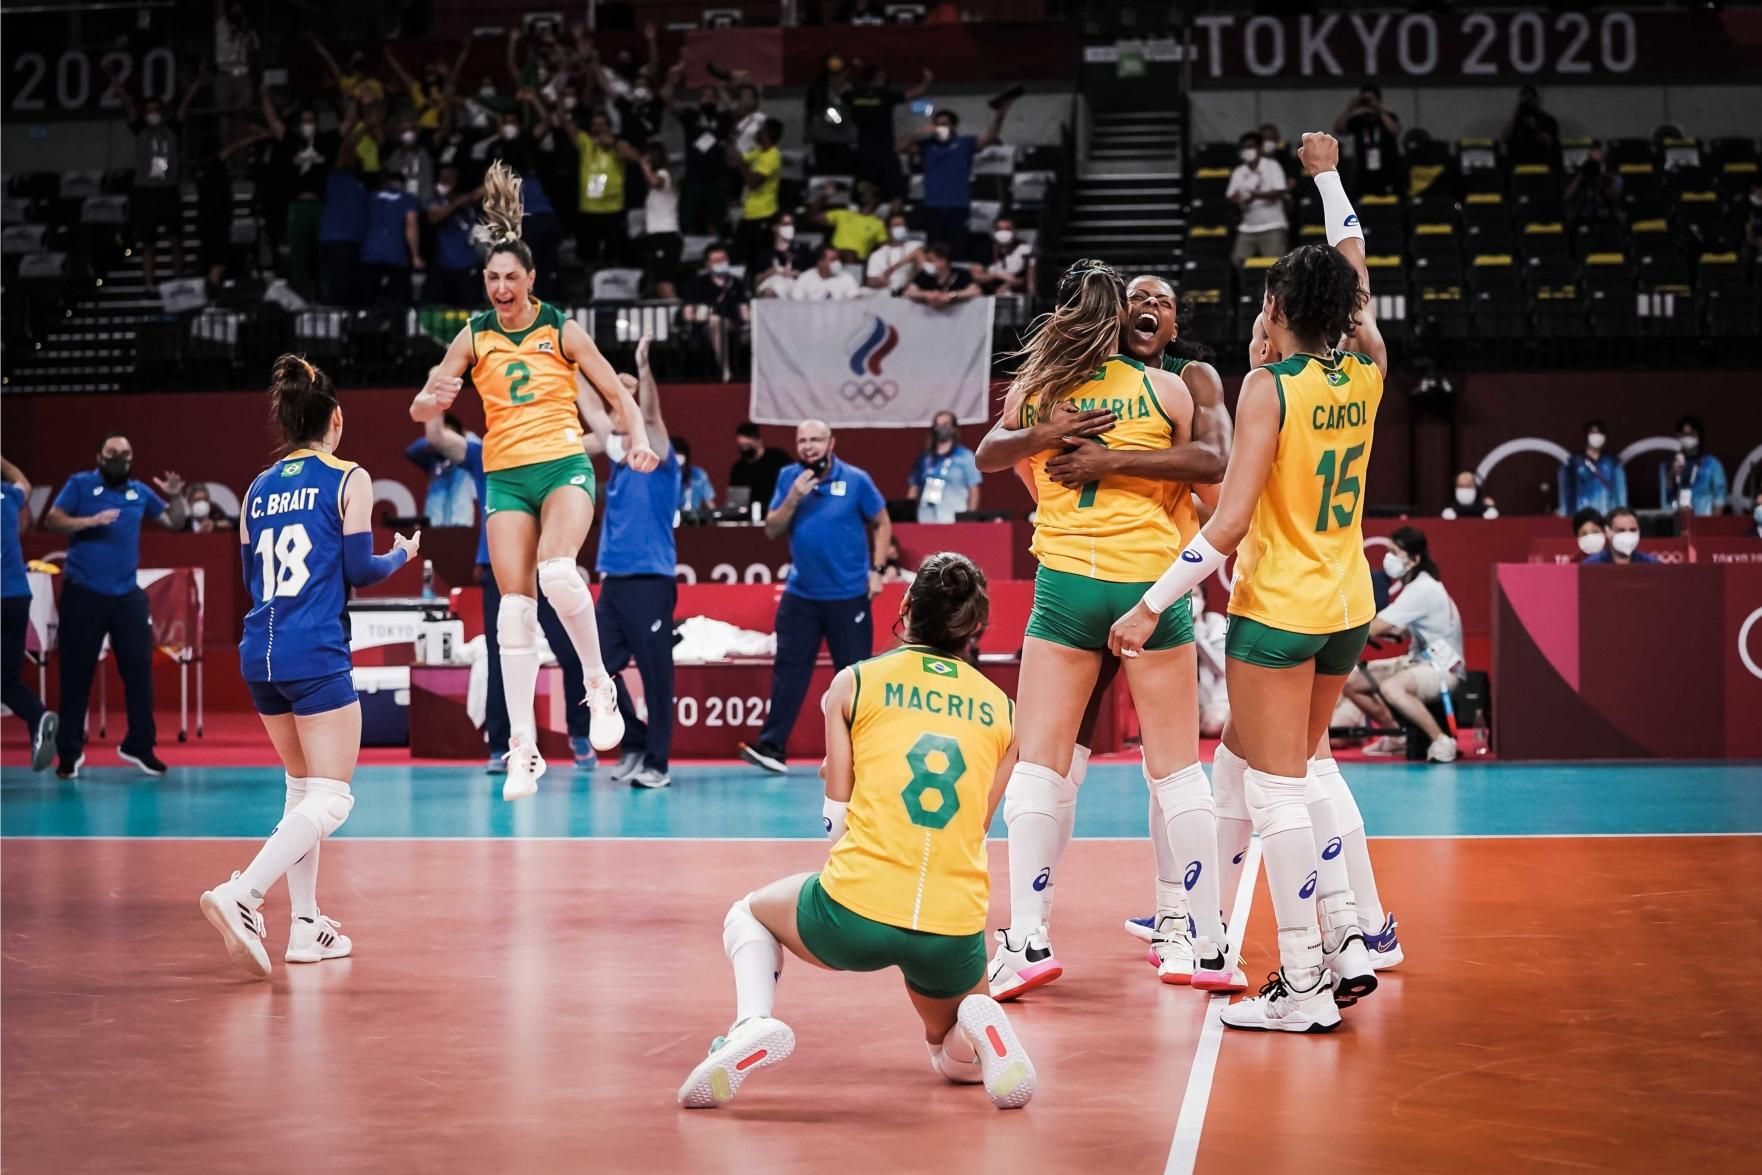 Como foi o ano da seleção brasileira feminina de vôlei? - UOL Esporte